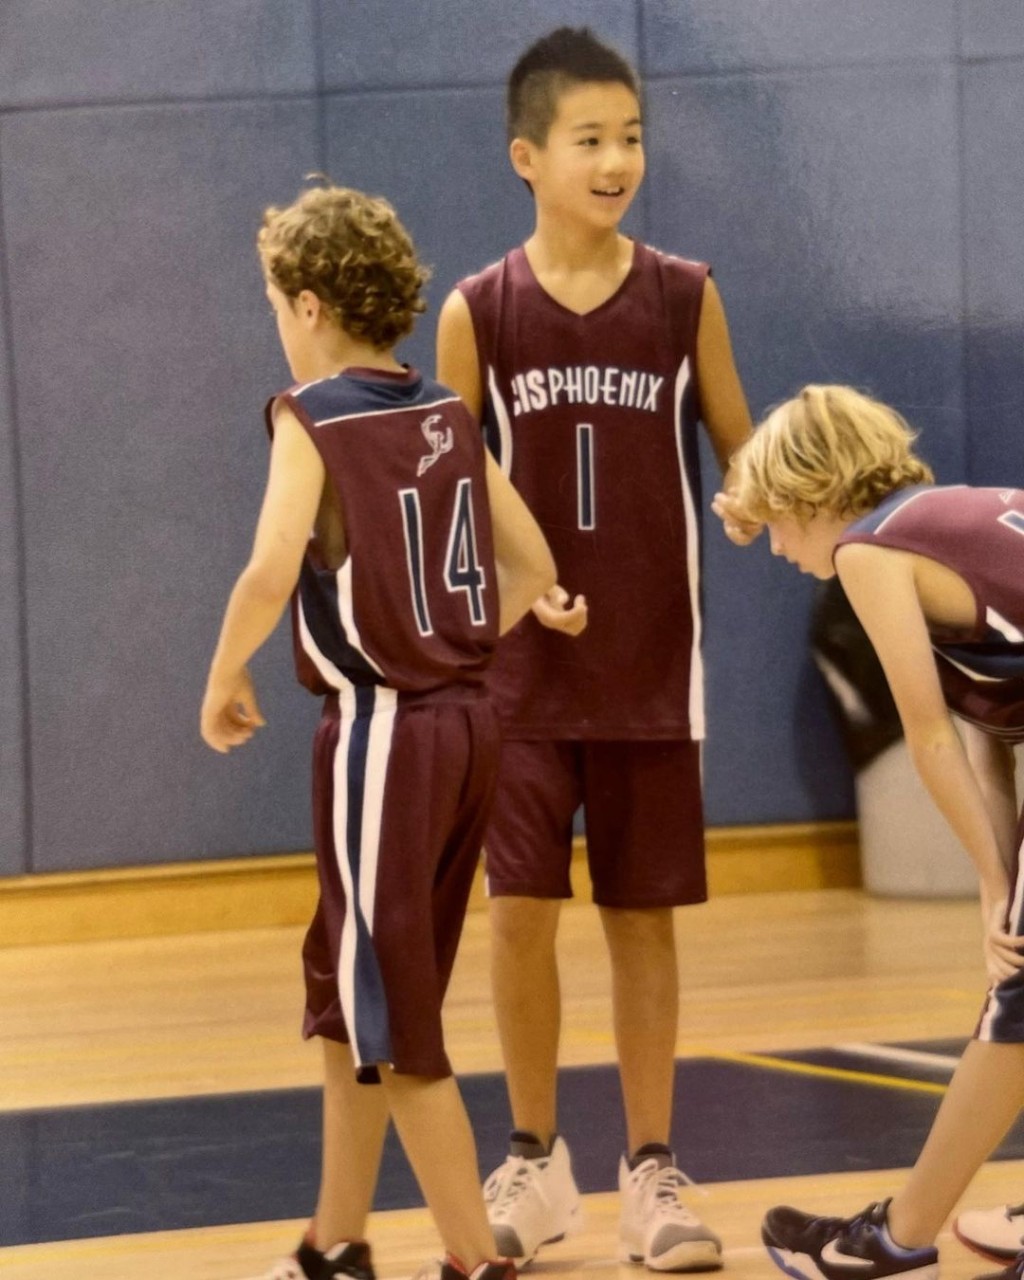 大仔Jeremey爱打篮球。